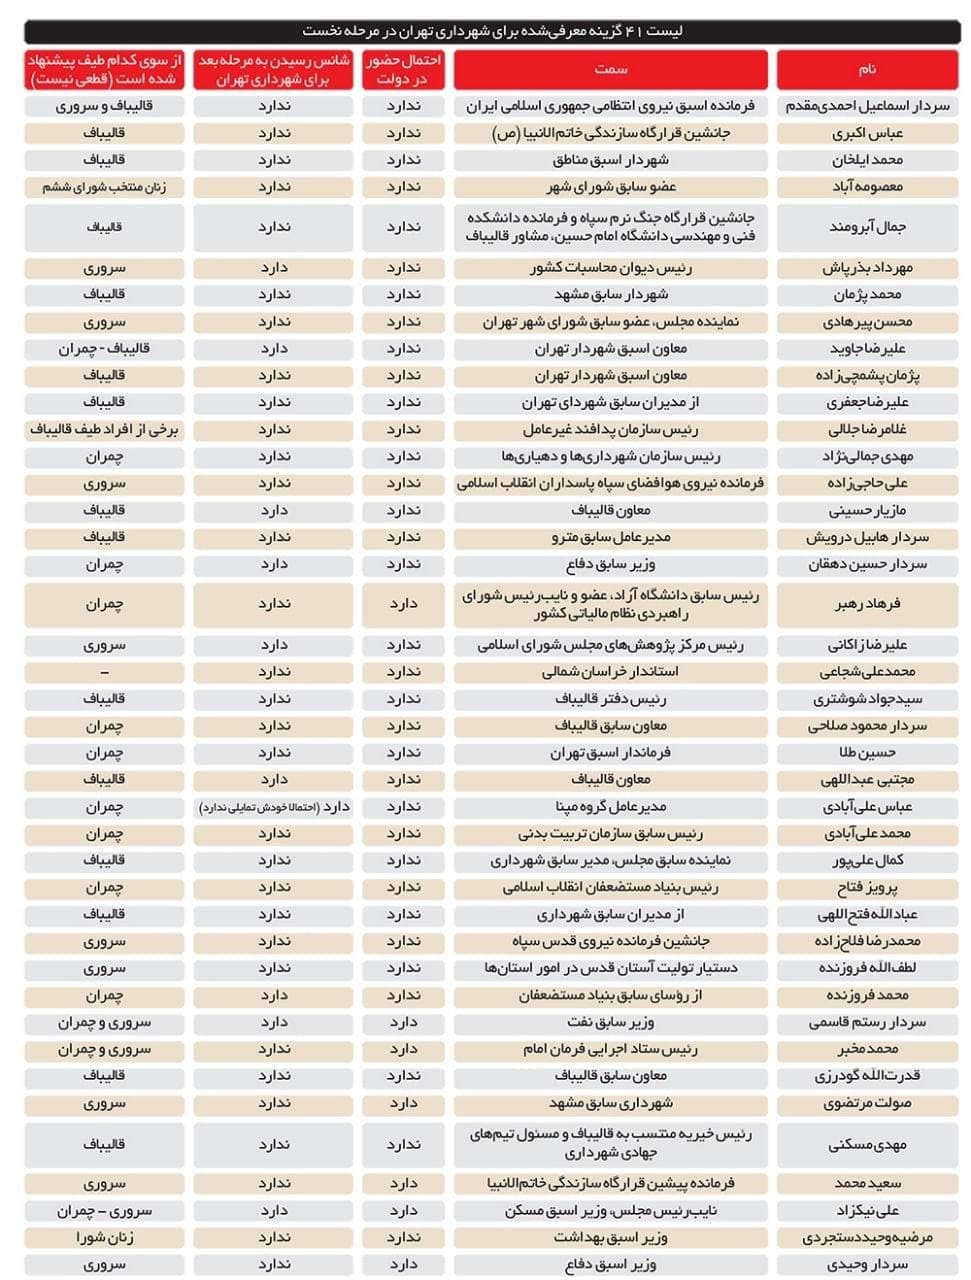 لیست ۴۰ تایی برای شهرداری با ۳۶ اسم انحرافی